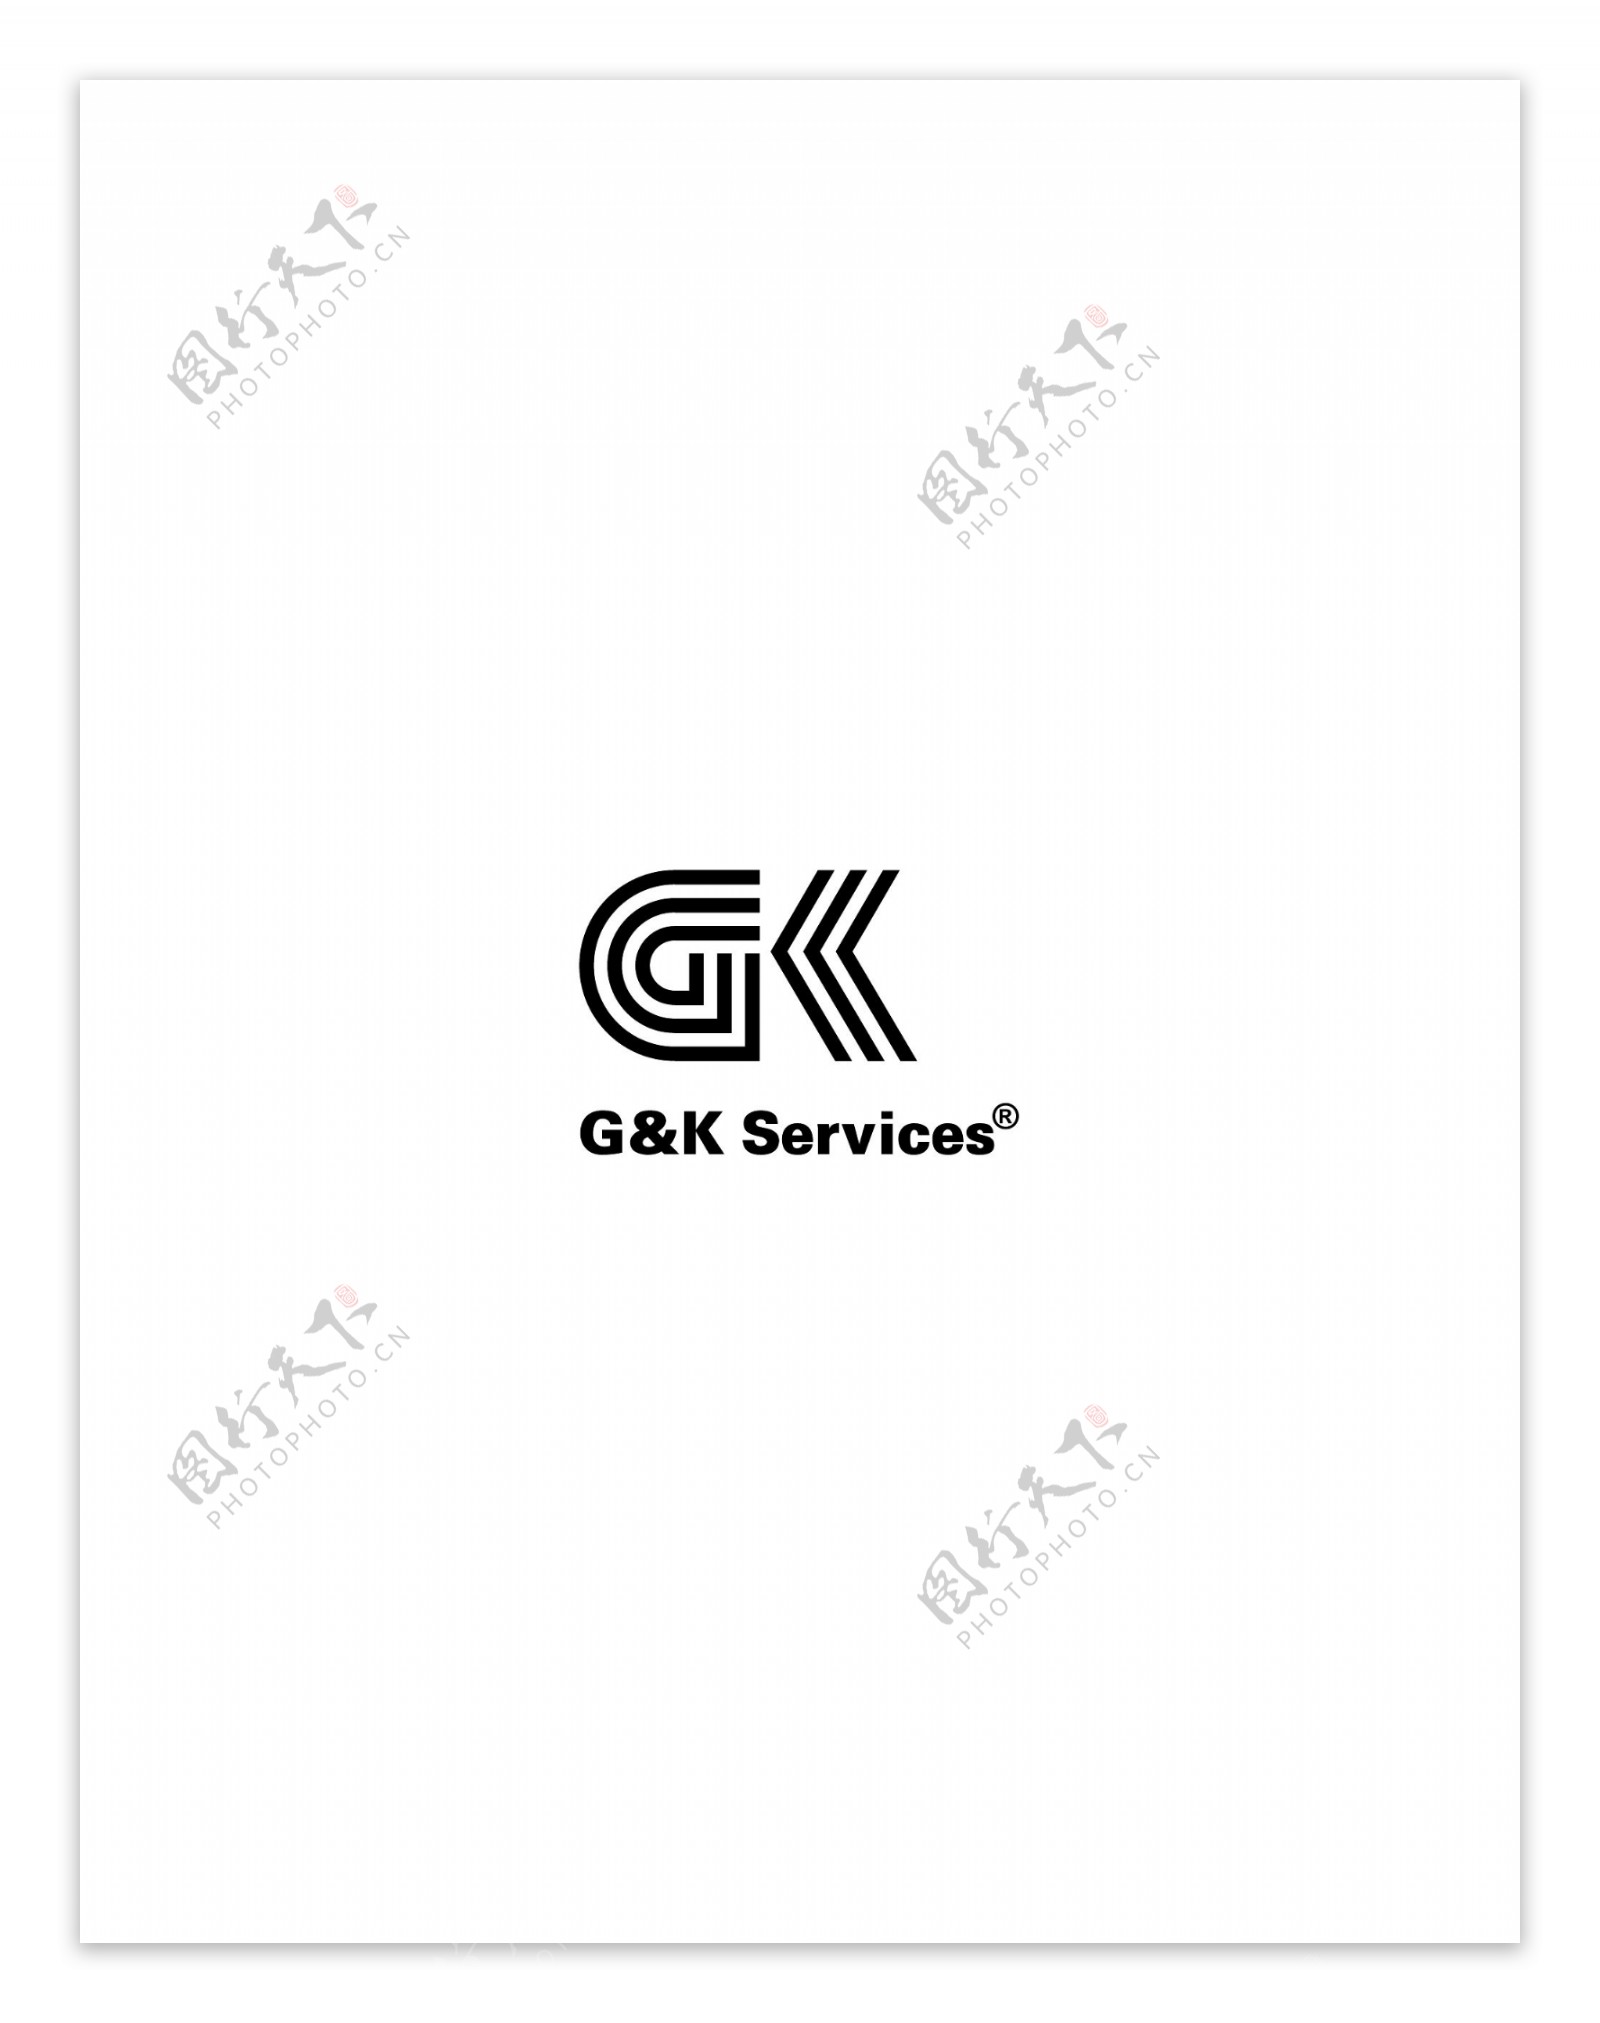 GKServiceslogo设计欣赏IT企业标志GKServices下载标志设计欣赏